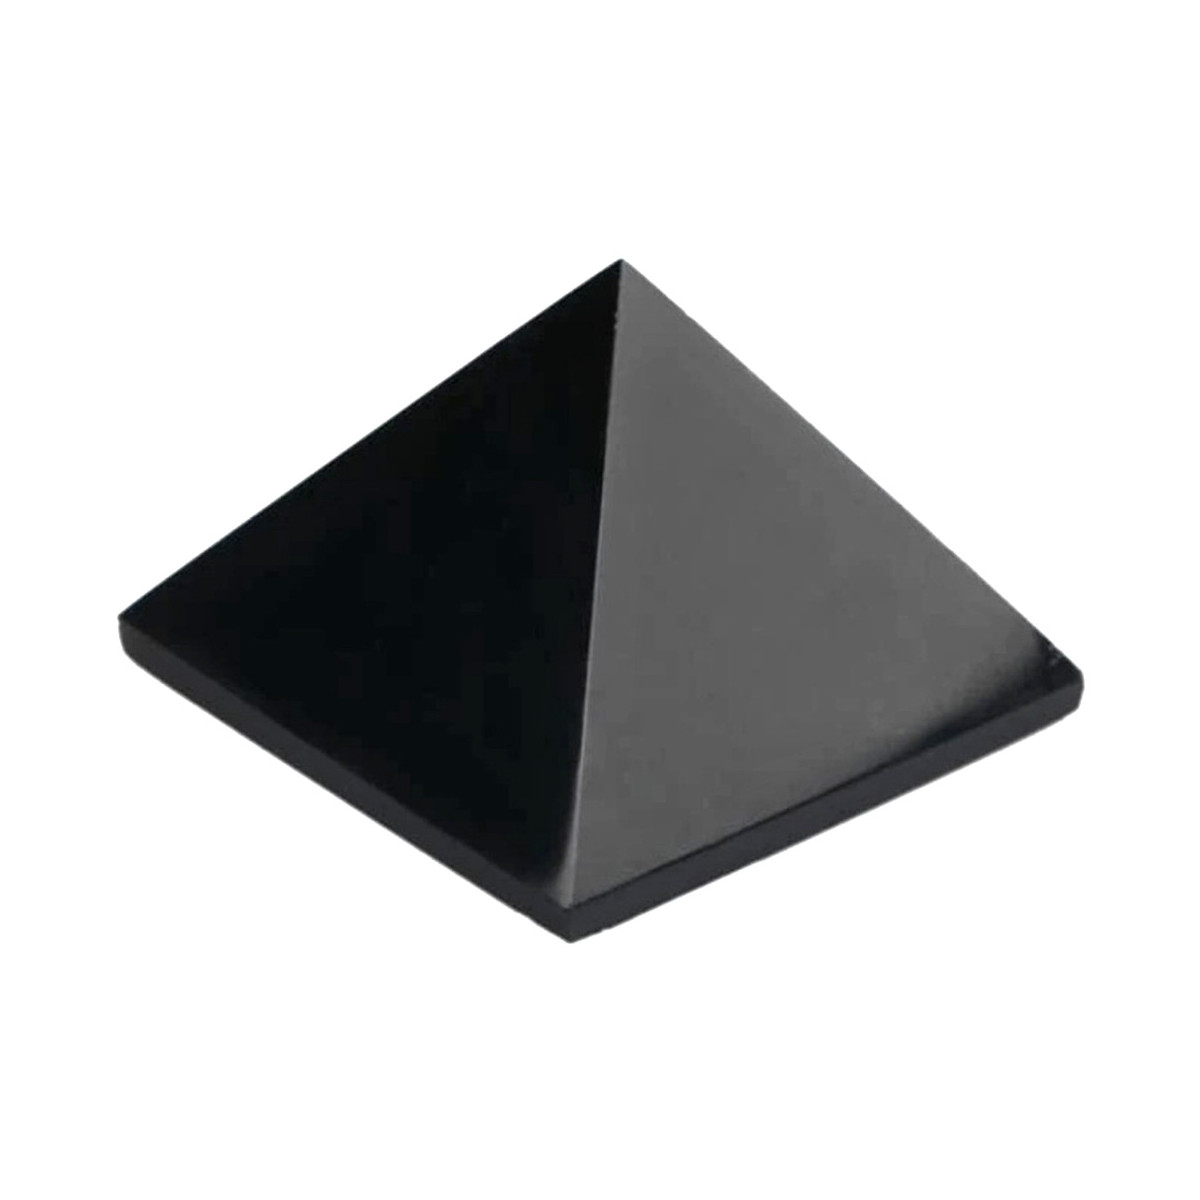 Pyramide en Obsidienne Noire